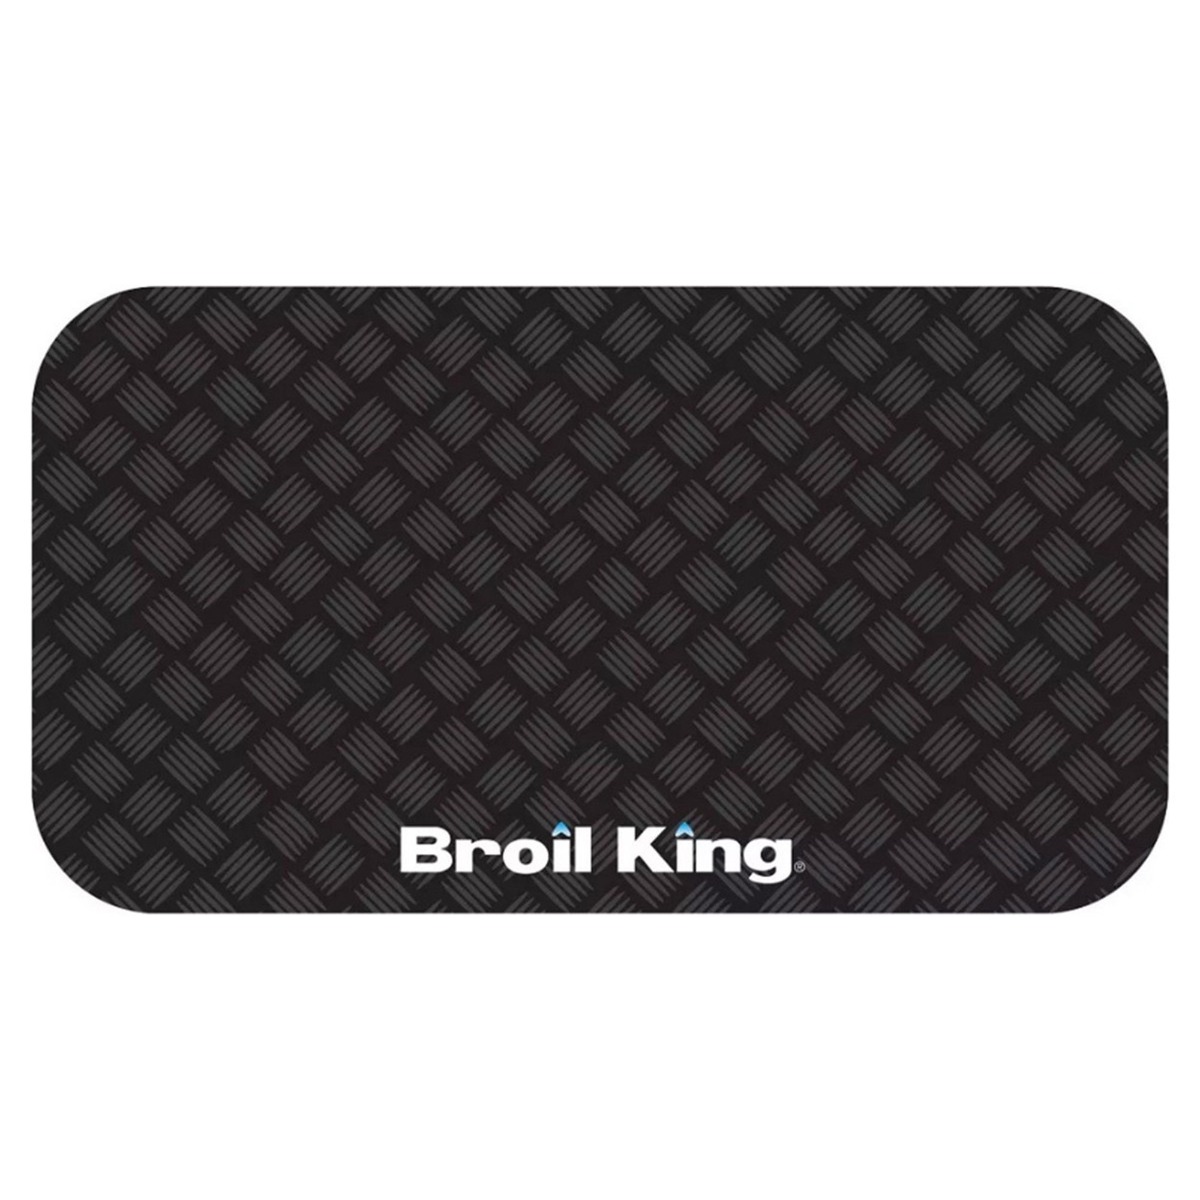 Μαύρο Προστατευτικό Χαλάκι (180 x 90 cm) – Broil King®